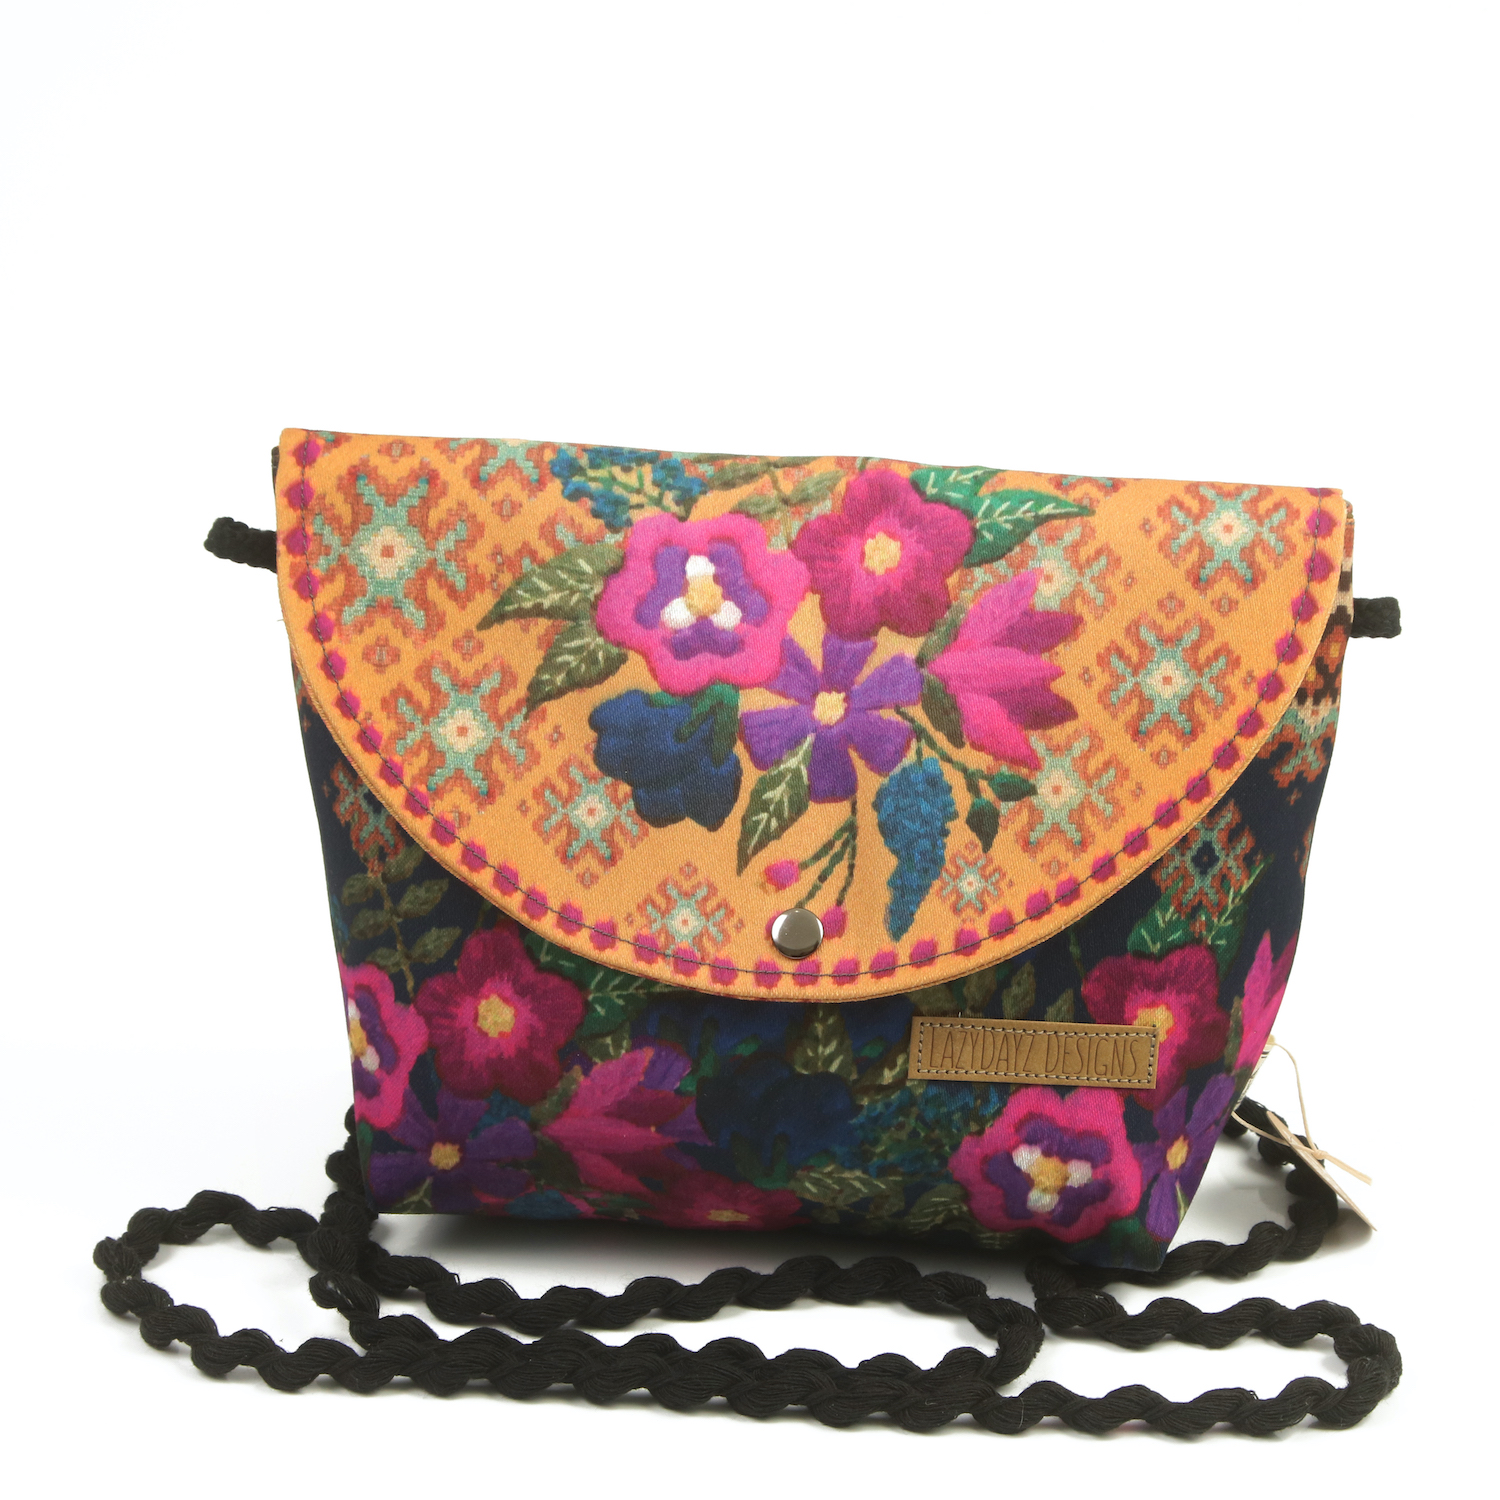 LazyDayz Designs Crossbody bag γυναικεία τσάντα χιαστί χειροποίητη na01